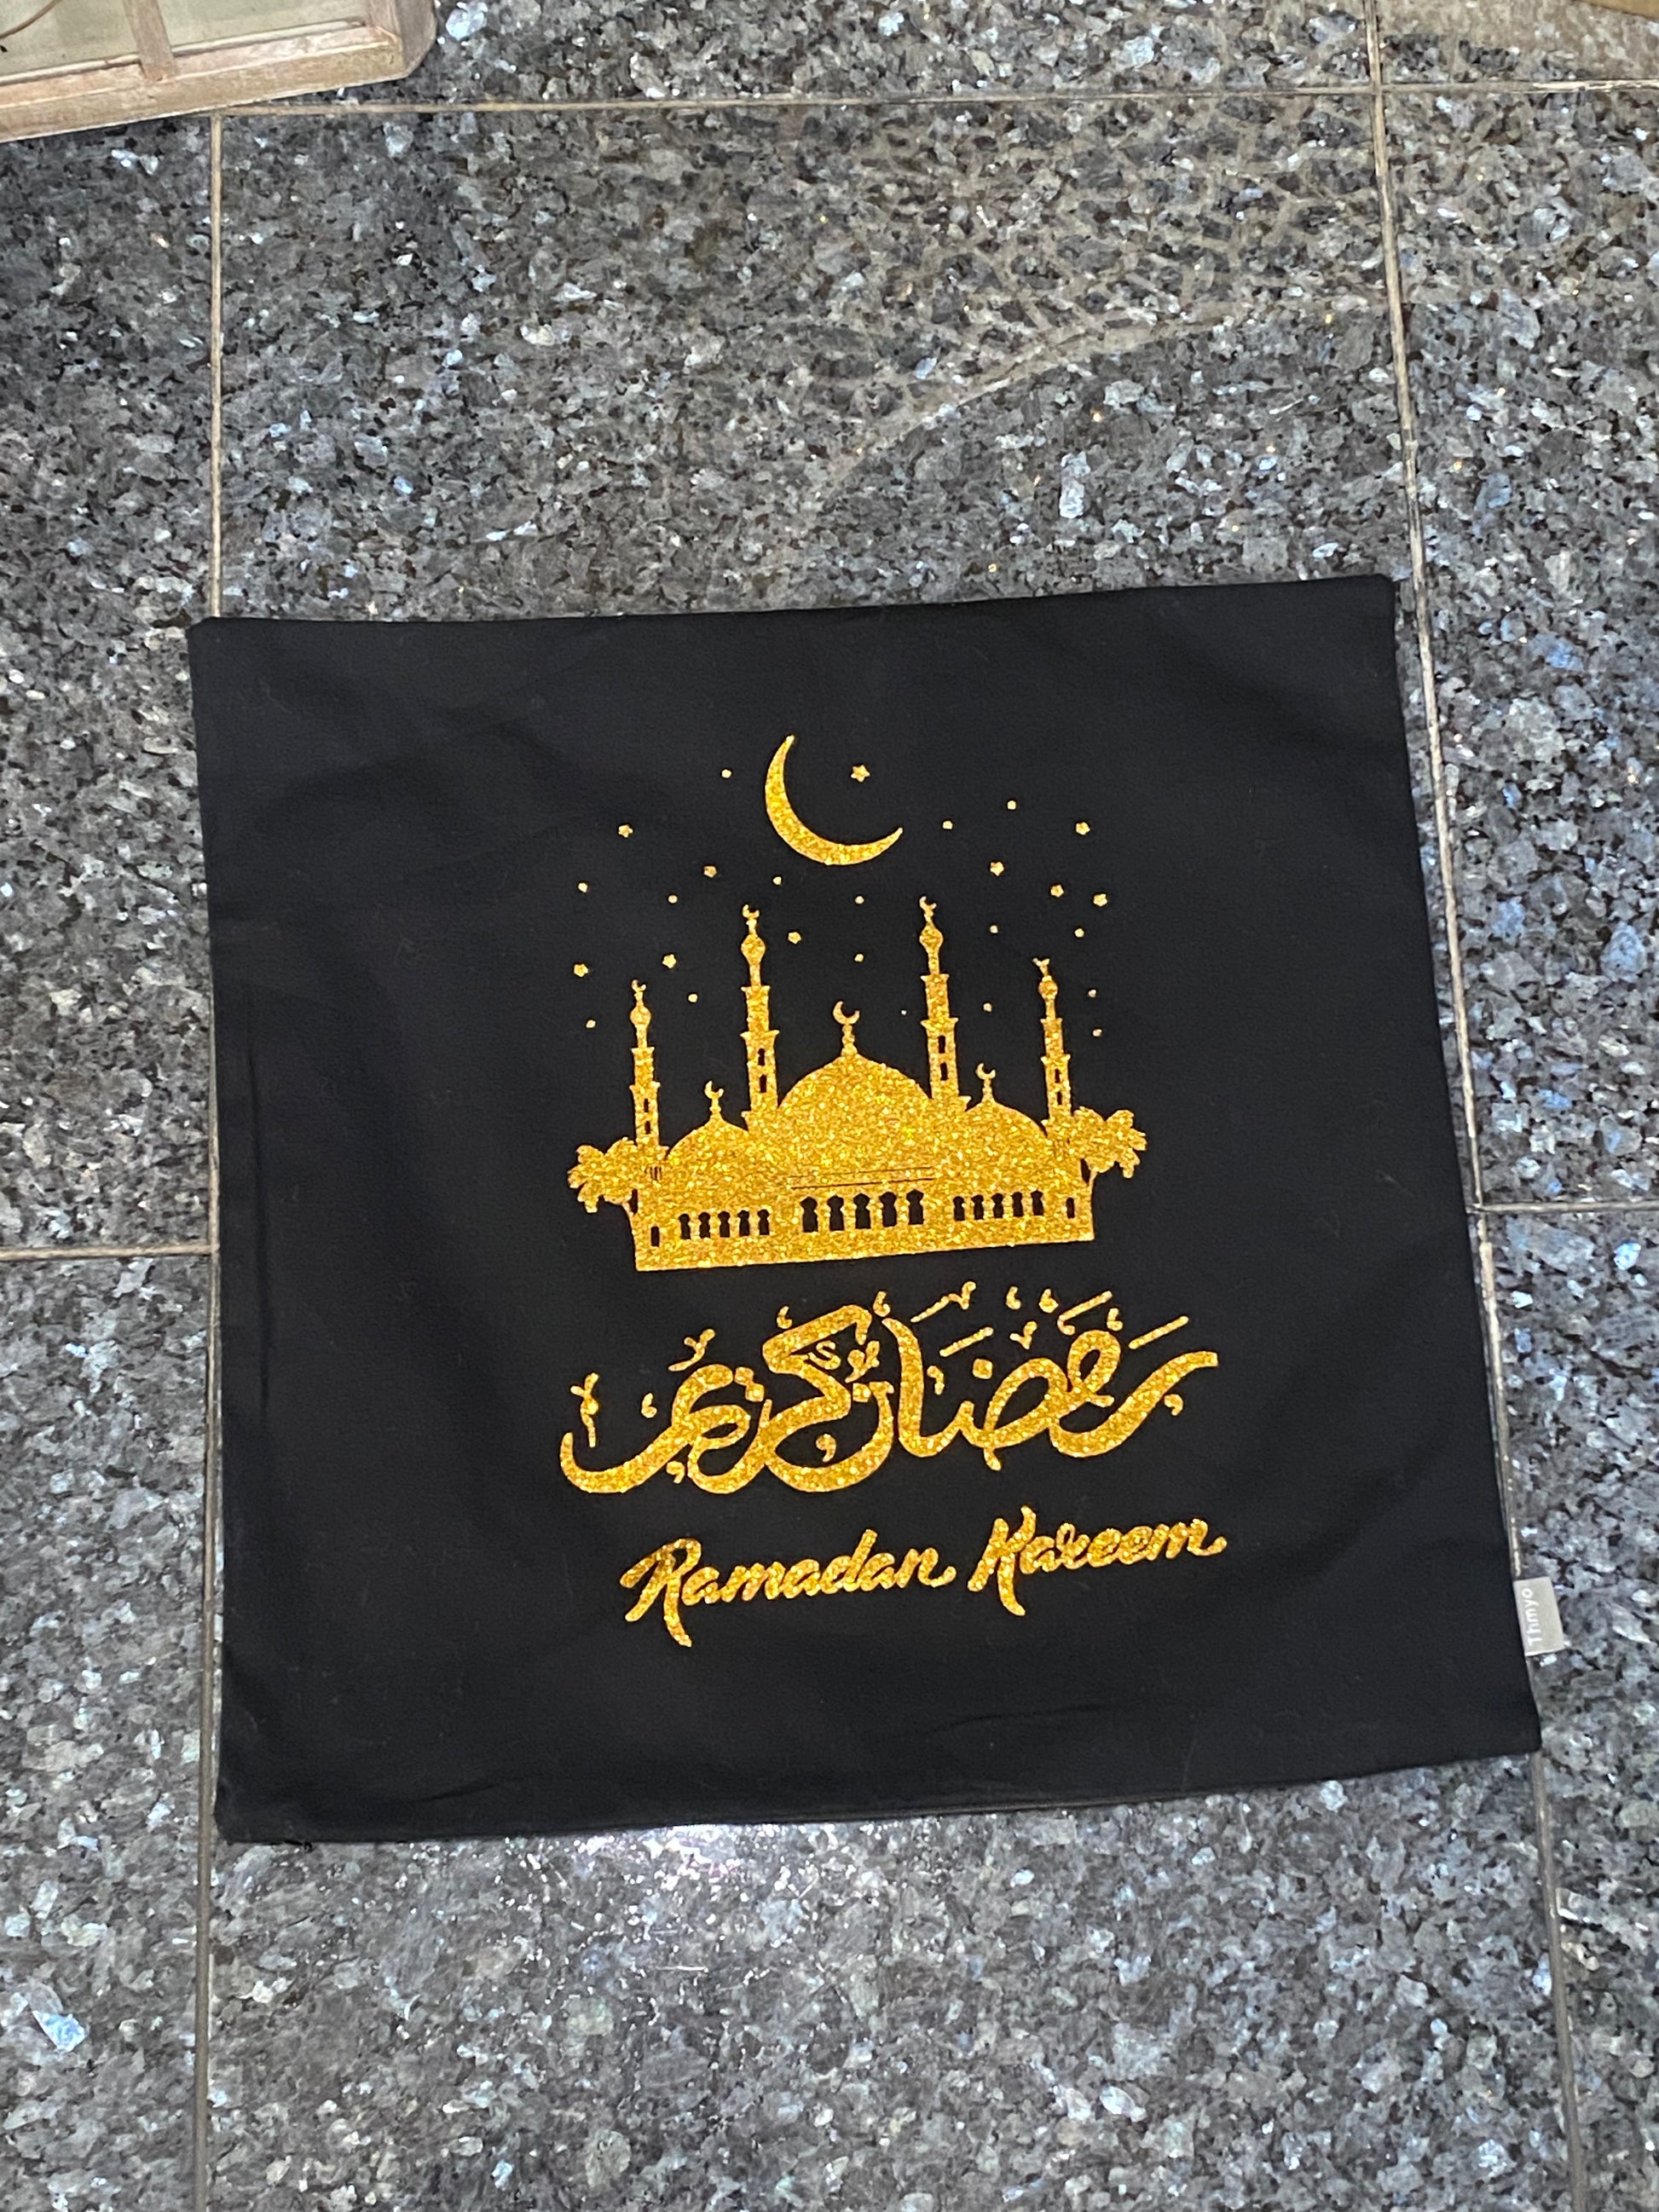 Ramadan Kareem Pillow Case